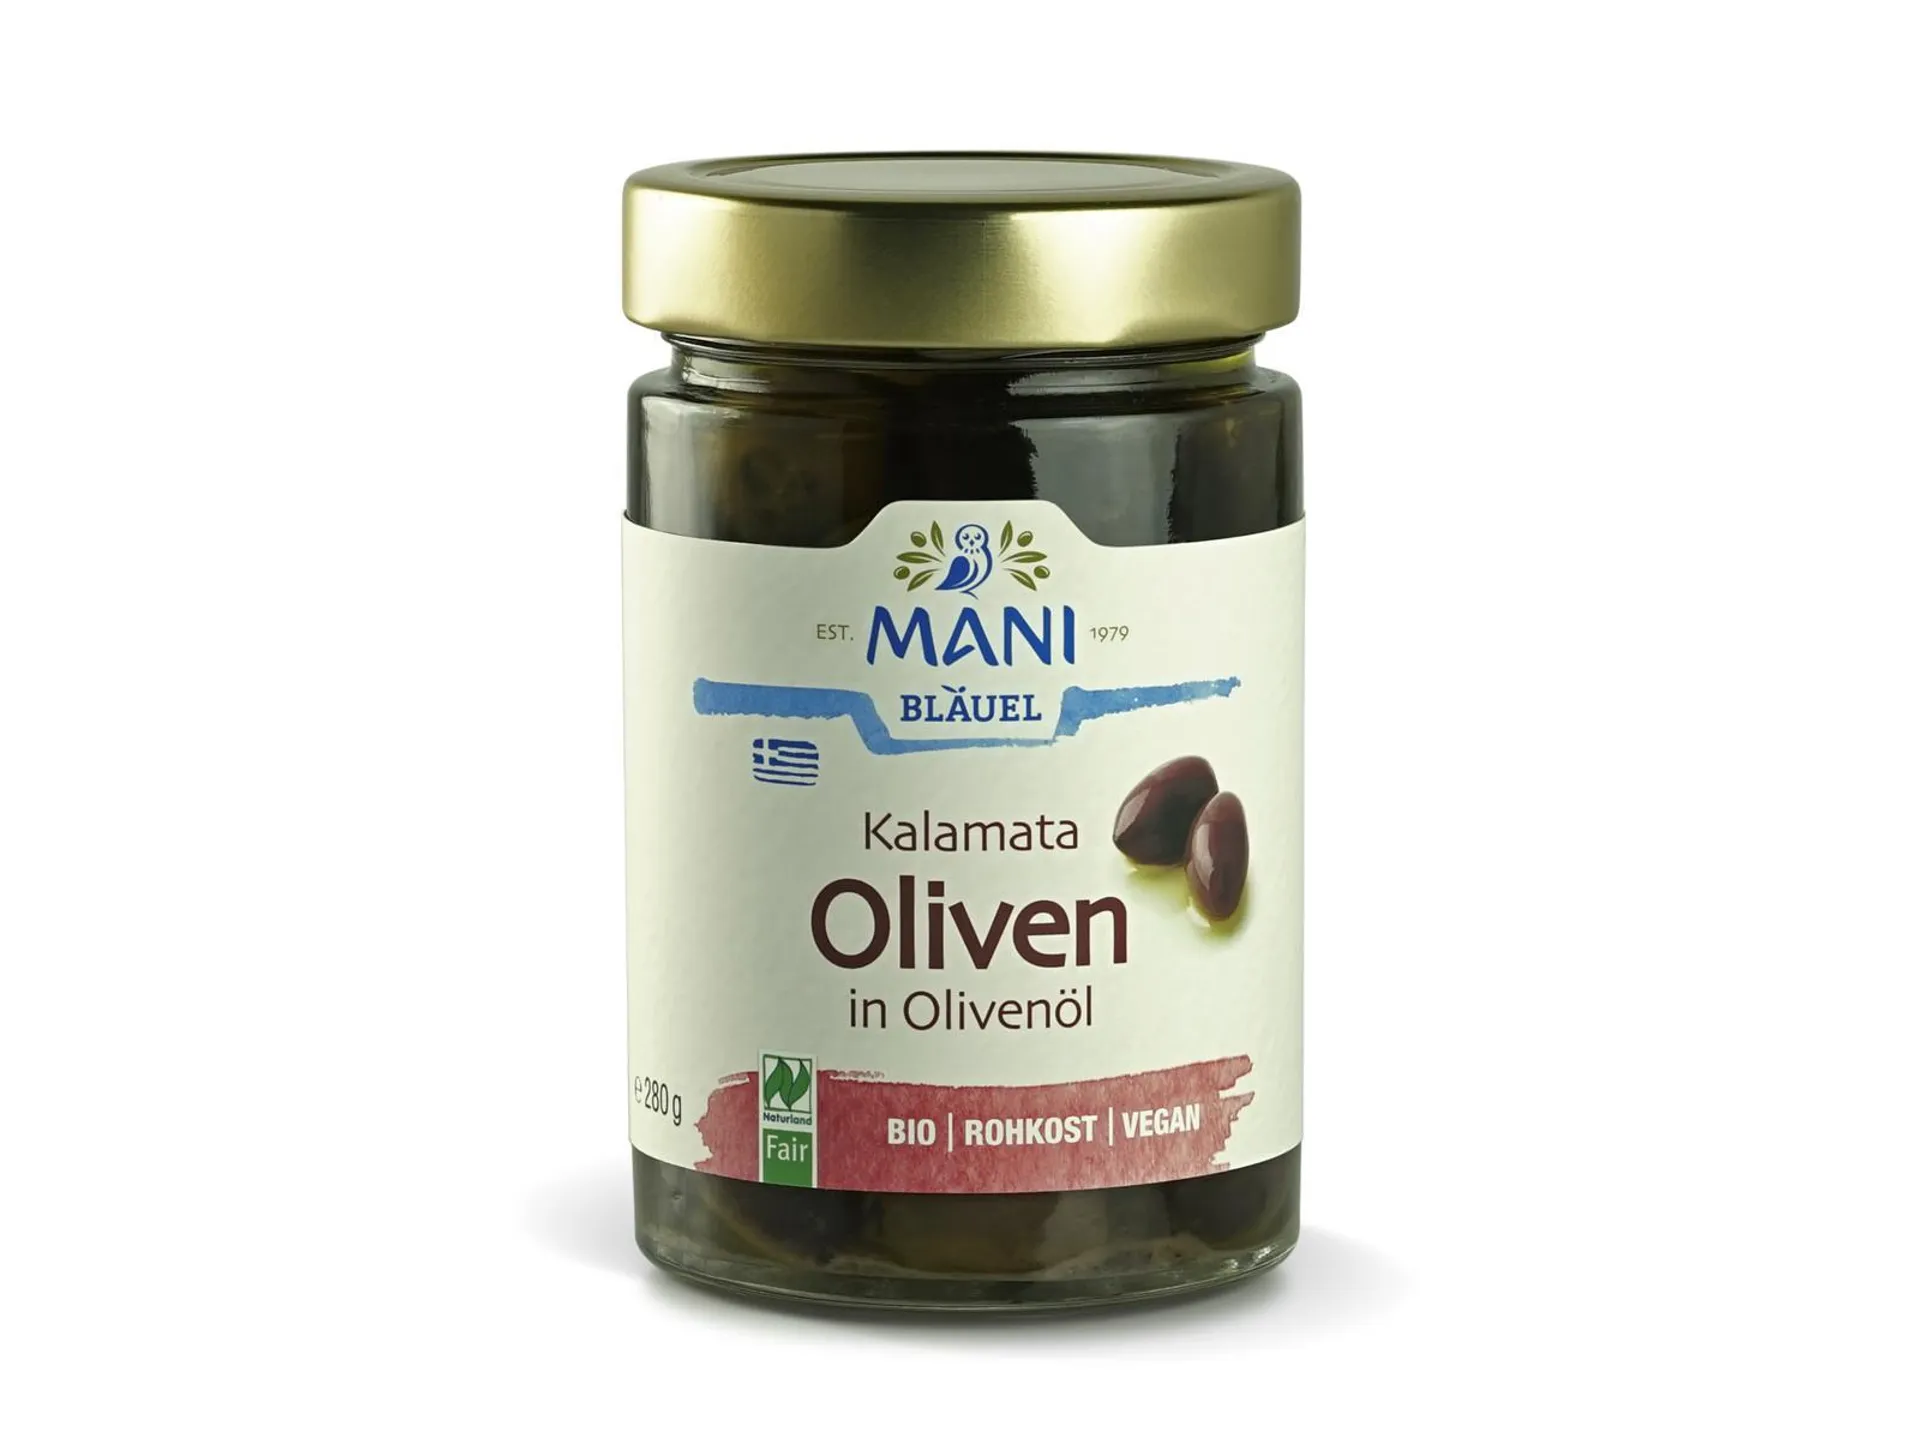 Mani Bläuel Kalamata Oliven in Olivenöl 280g